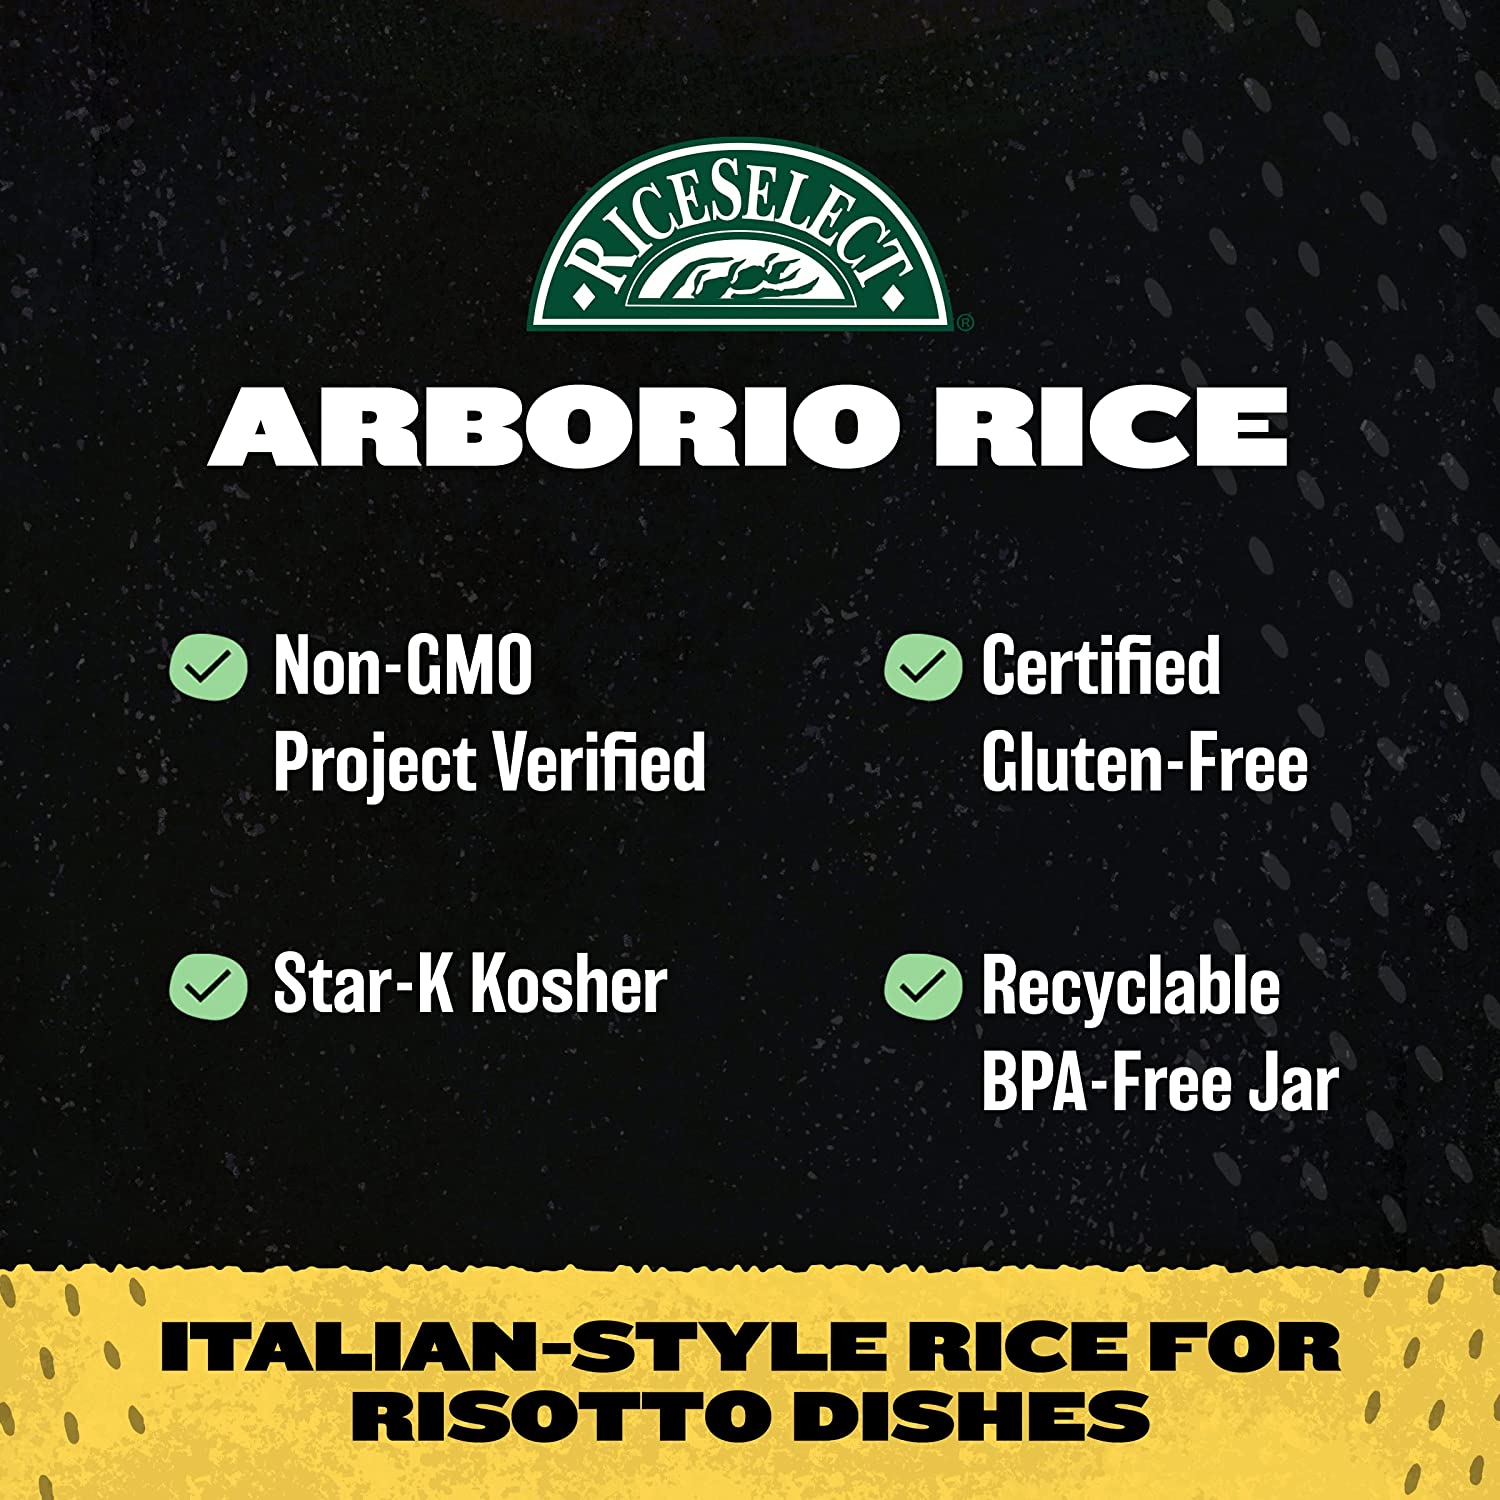 RiceSelect Arborio Rice for Italian Risotto, Premium Gluten Free Rice, Non-GMO, 32 Ounce Jar